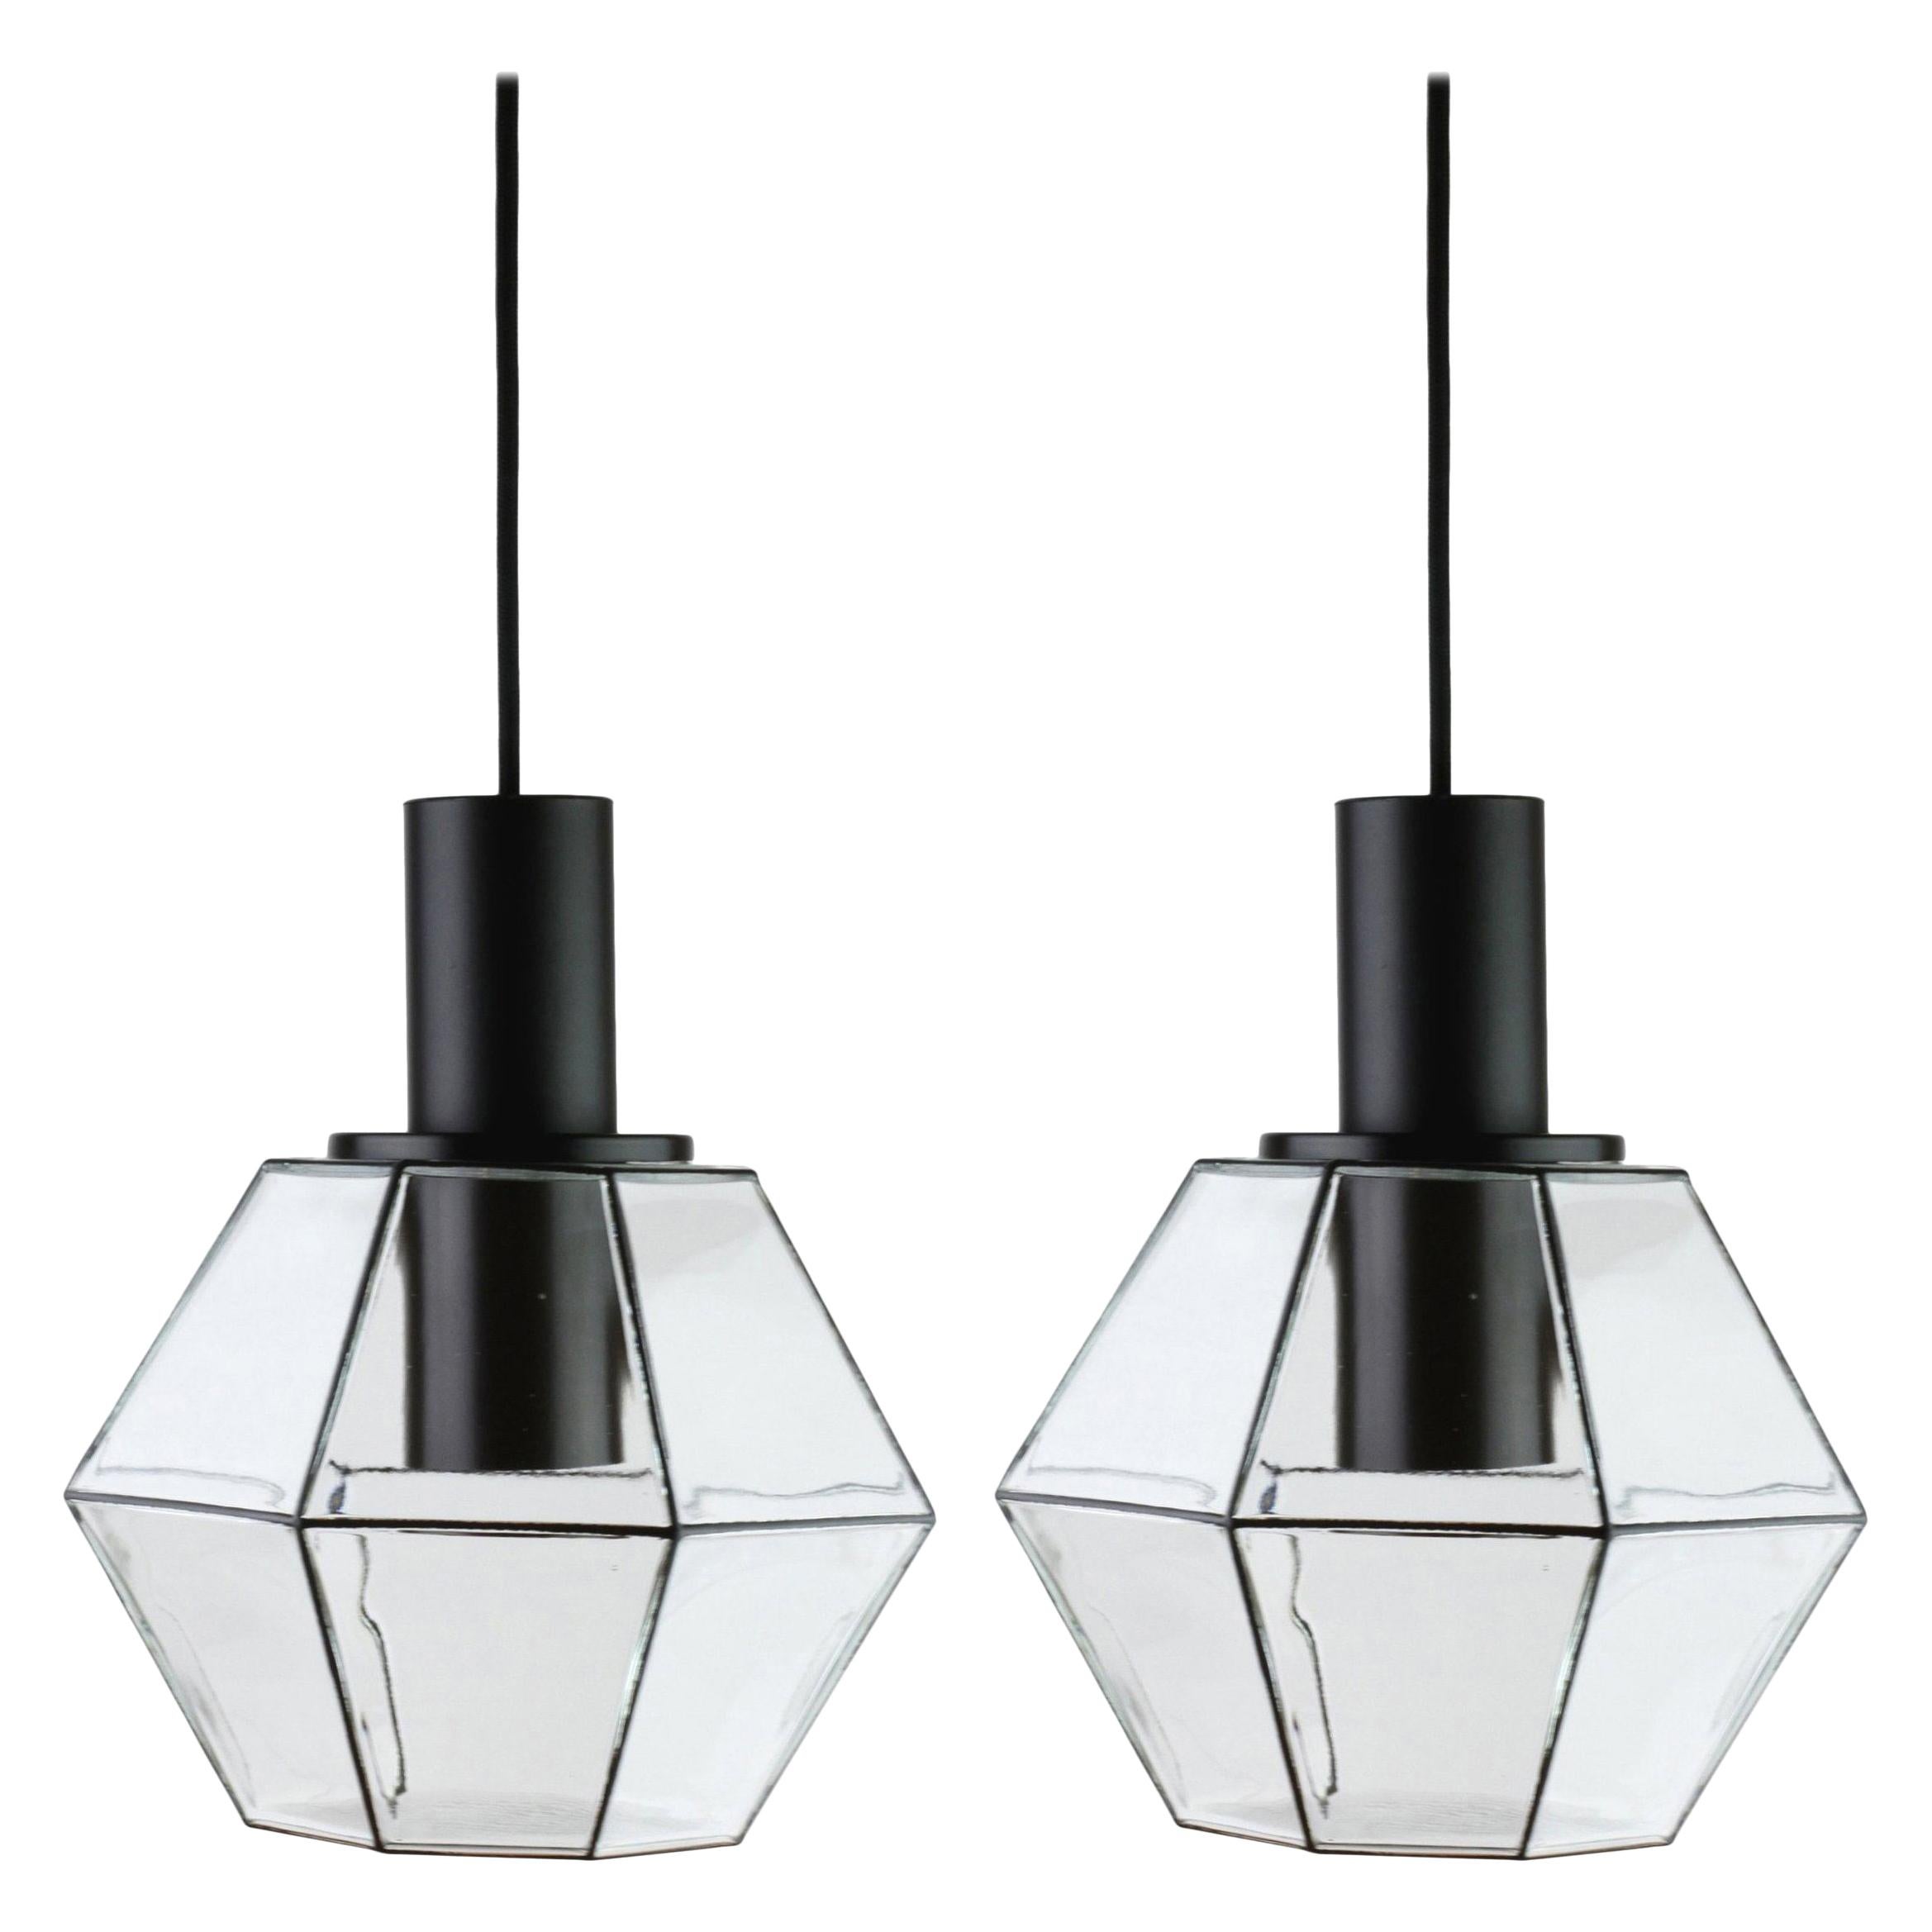 Limburg Pair of Vintage Minimalist Geometric Black & Clear Glass Pendant Lights